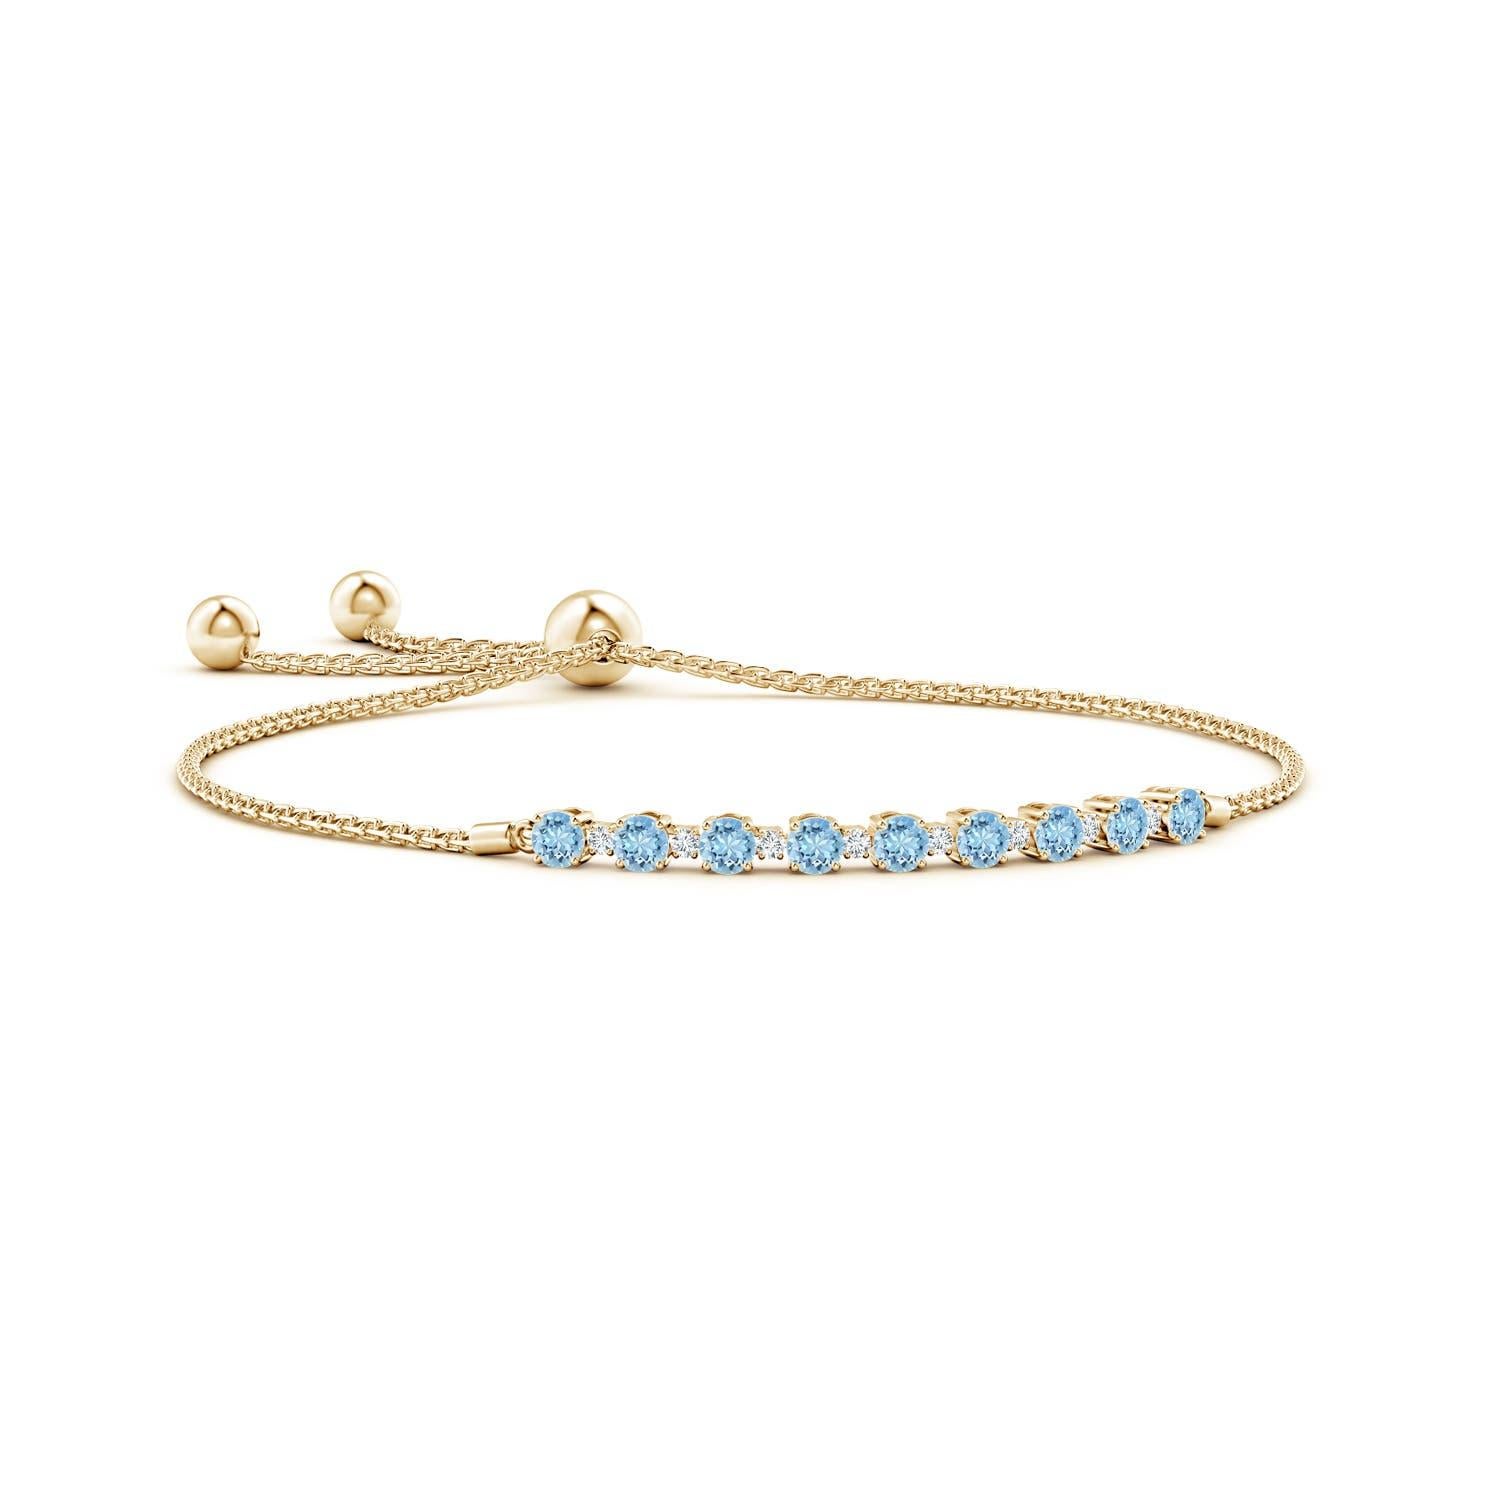 Meeresblaue Aquamarine und glitzernde Diamanten vereinen sich auf diesem Tennis-Bolo-Armband aus 14 Karat Gelbgold. Sie sind abwechselnd mit Zacken besetzt und sorgen für einen klassischen Look. Dieses Armband ist verstellbar und passt den meisten